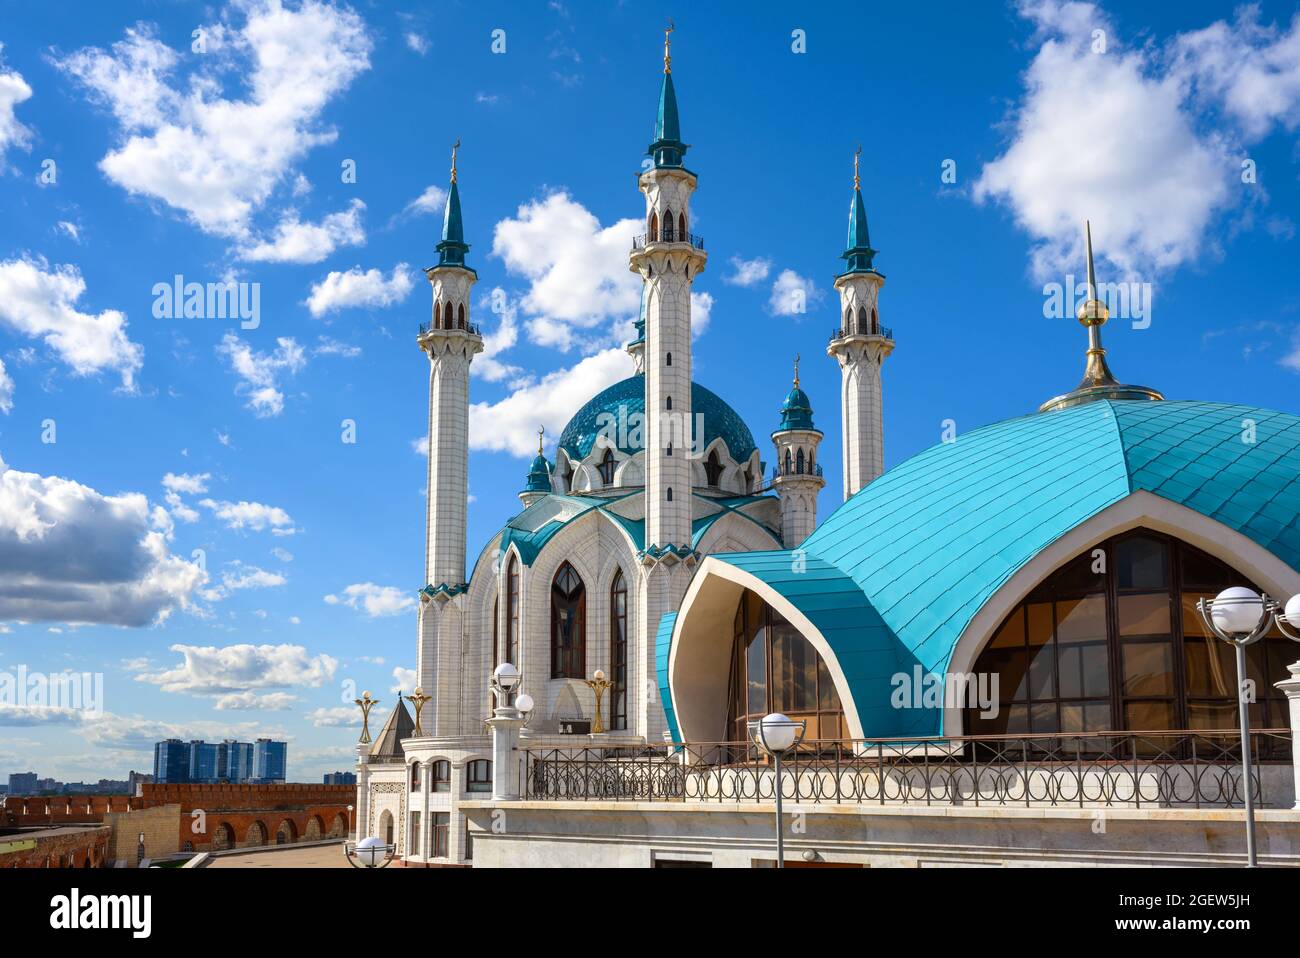 Kul Sharif Moschee in Kasan Kreml, Tatarstan, Russland. Es ist das Wahrzeichen von Kazan. Schöne Aussicht auf islamische Architektur, Touristenattraktion unter blauem Himmel i Stockfoto